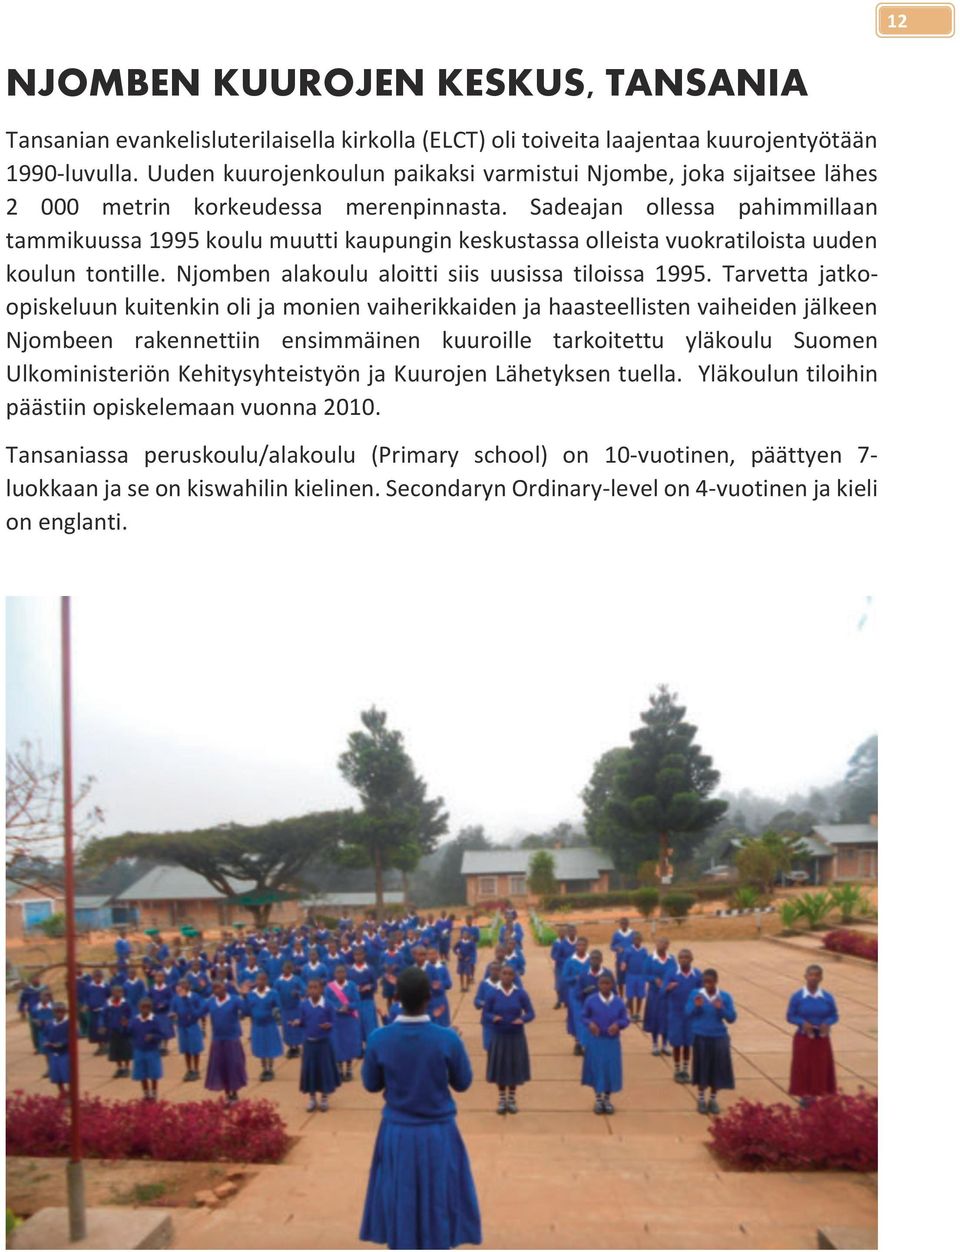 Sadeajan ollessa pahimmillaan tammikuussa 1995 koulu muutti kaupungin keskustassa olleista vuokratiloista uuden koulun tontille. Njomben alakoulu aloitti siis uusissa tiloissa 1995.